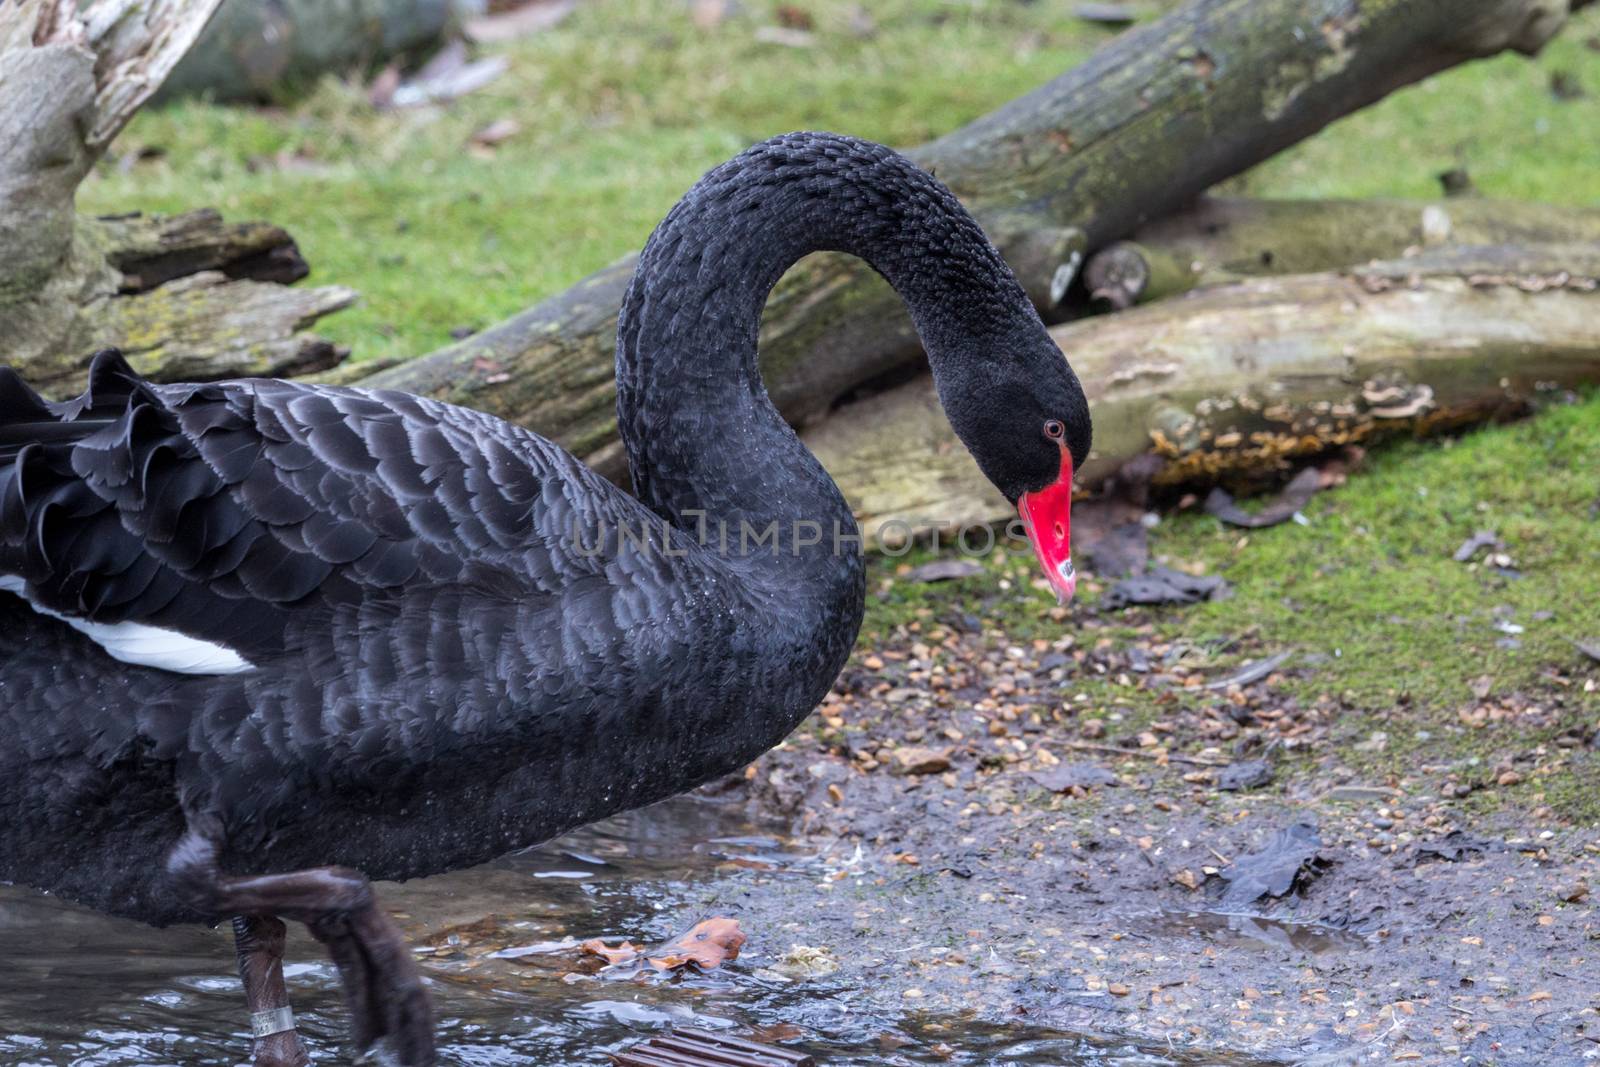 Black Swan, cygnus atratus, in the UK